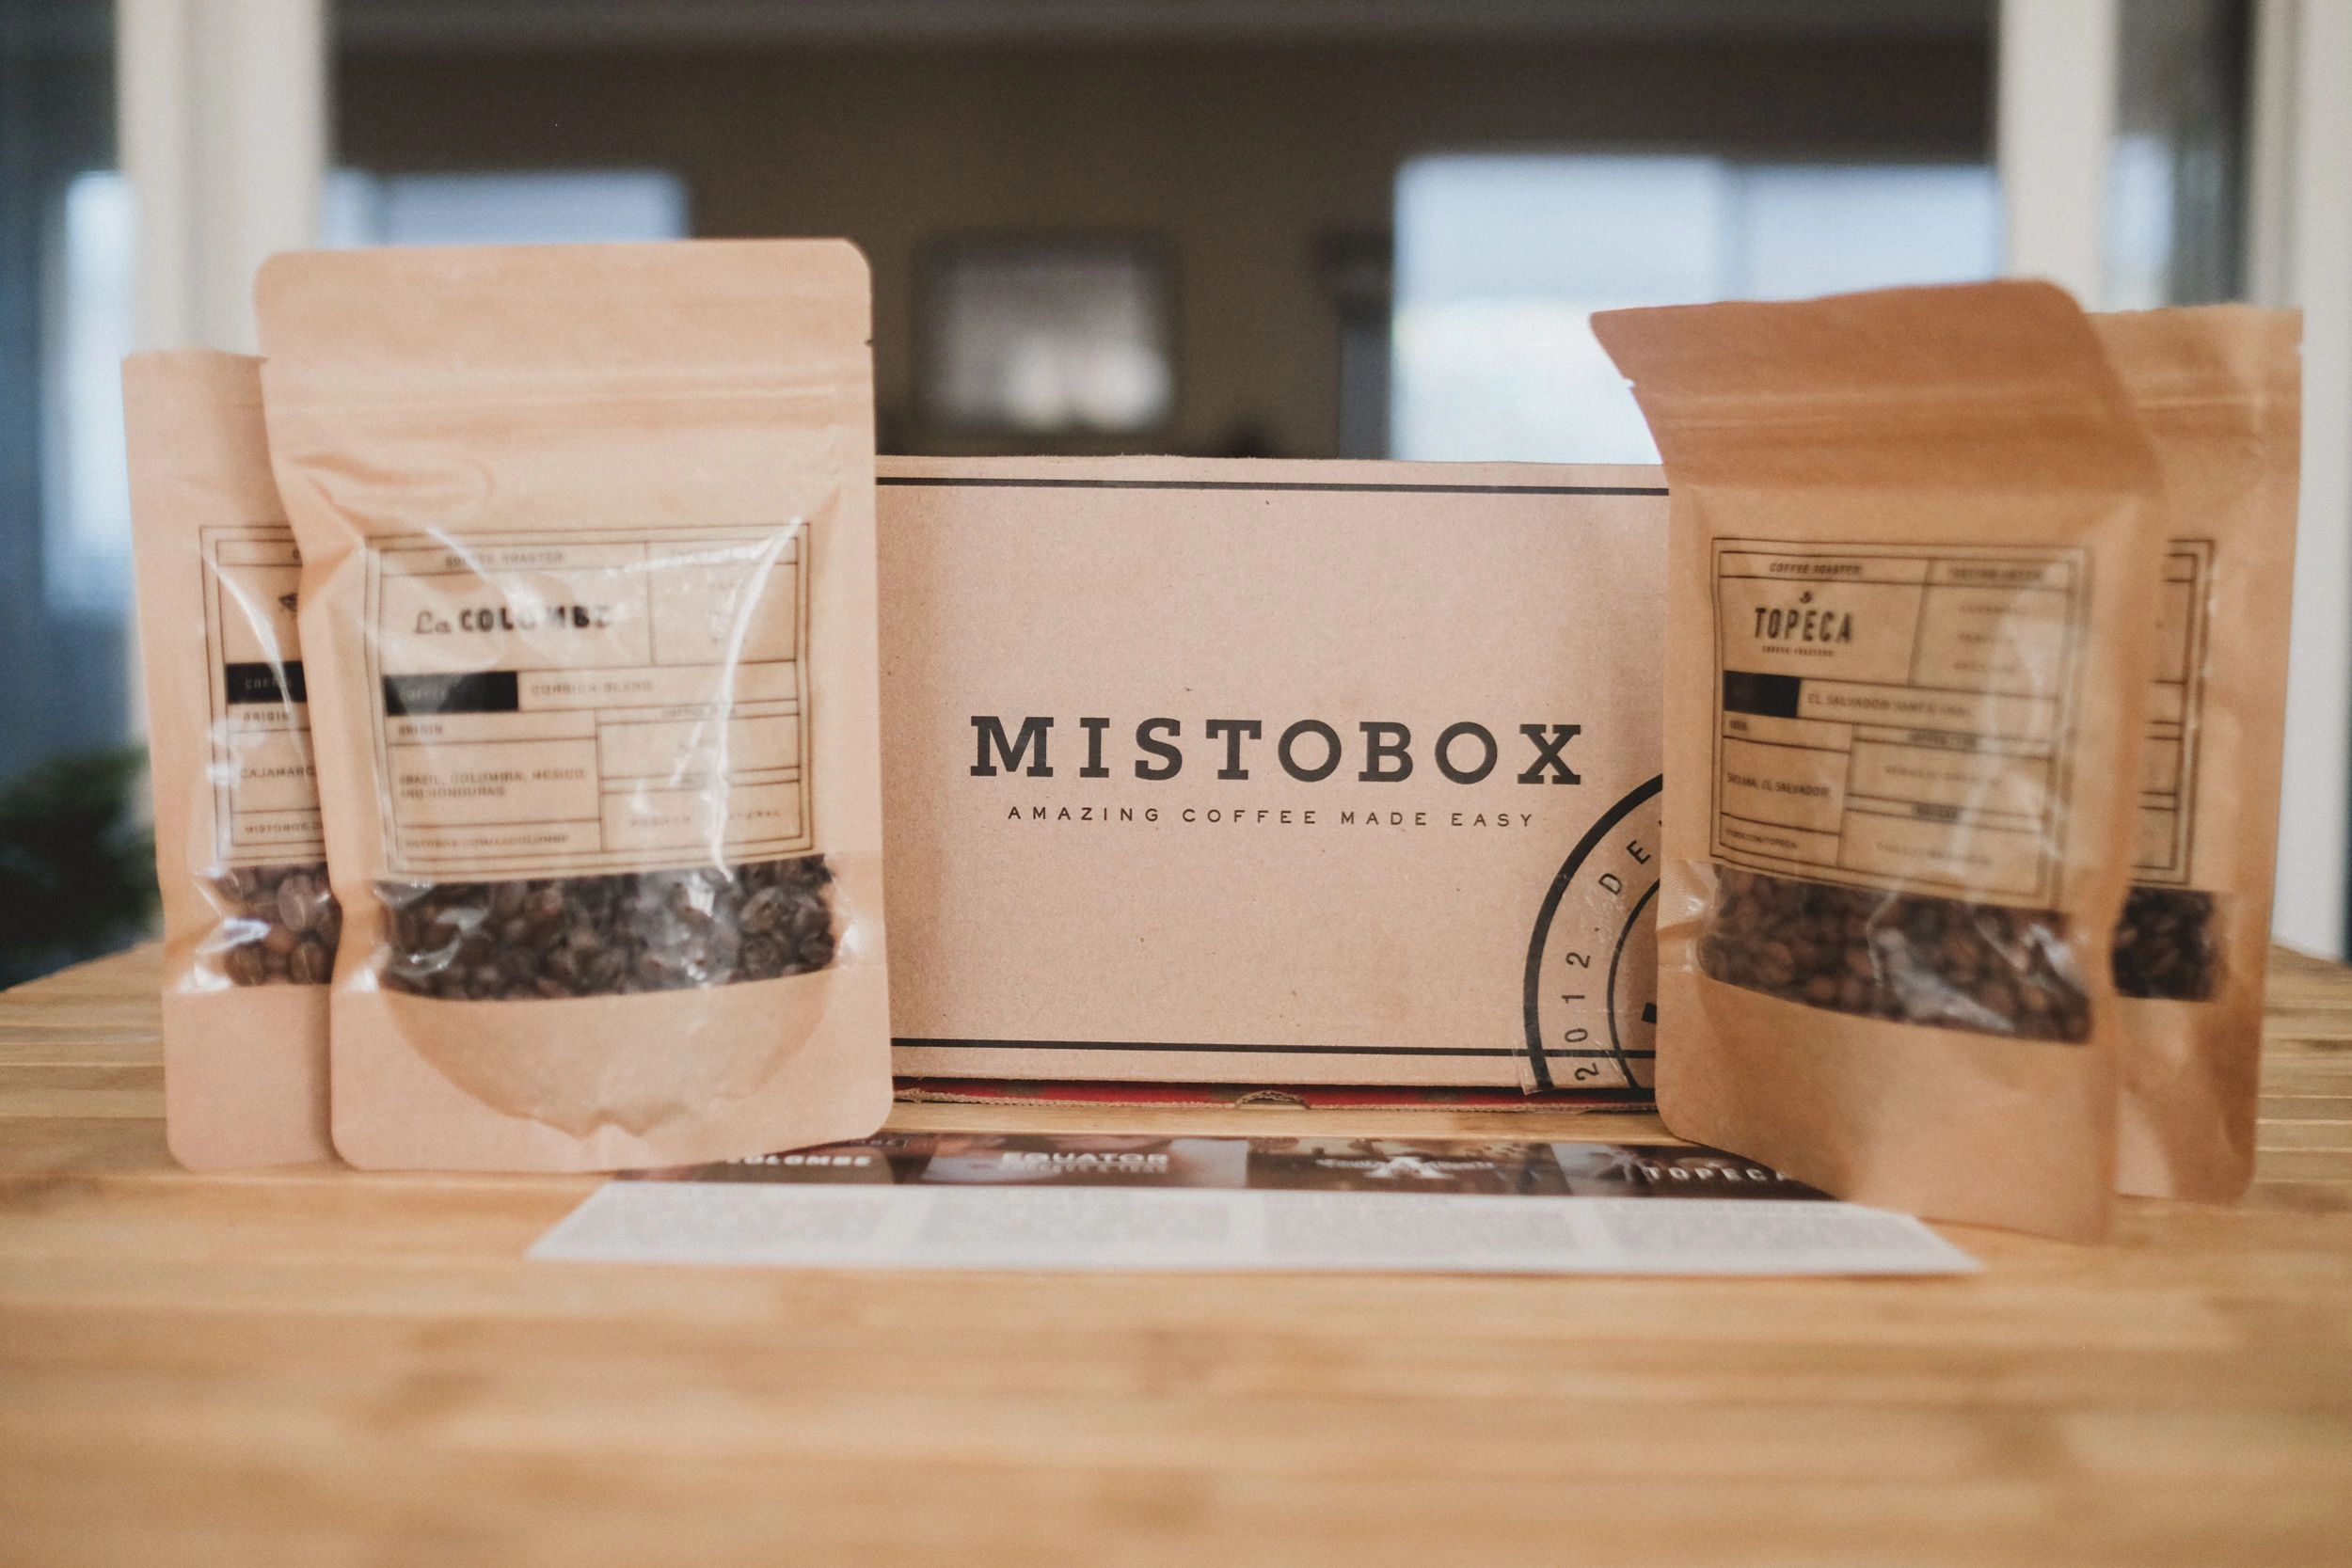 Misto box subscription box ship internationally 